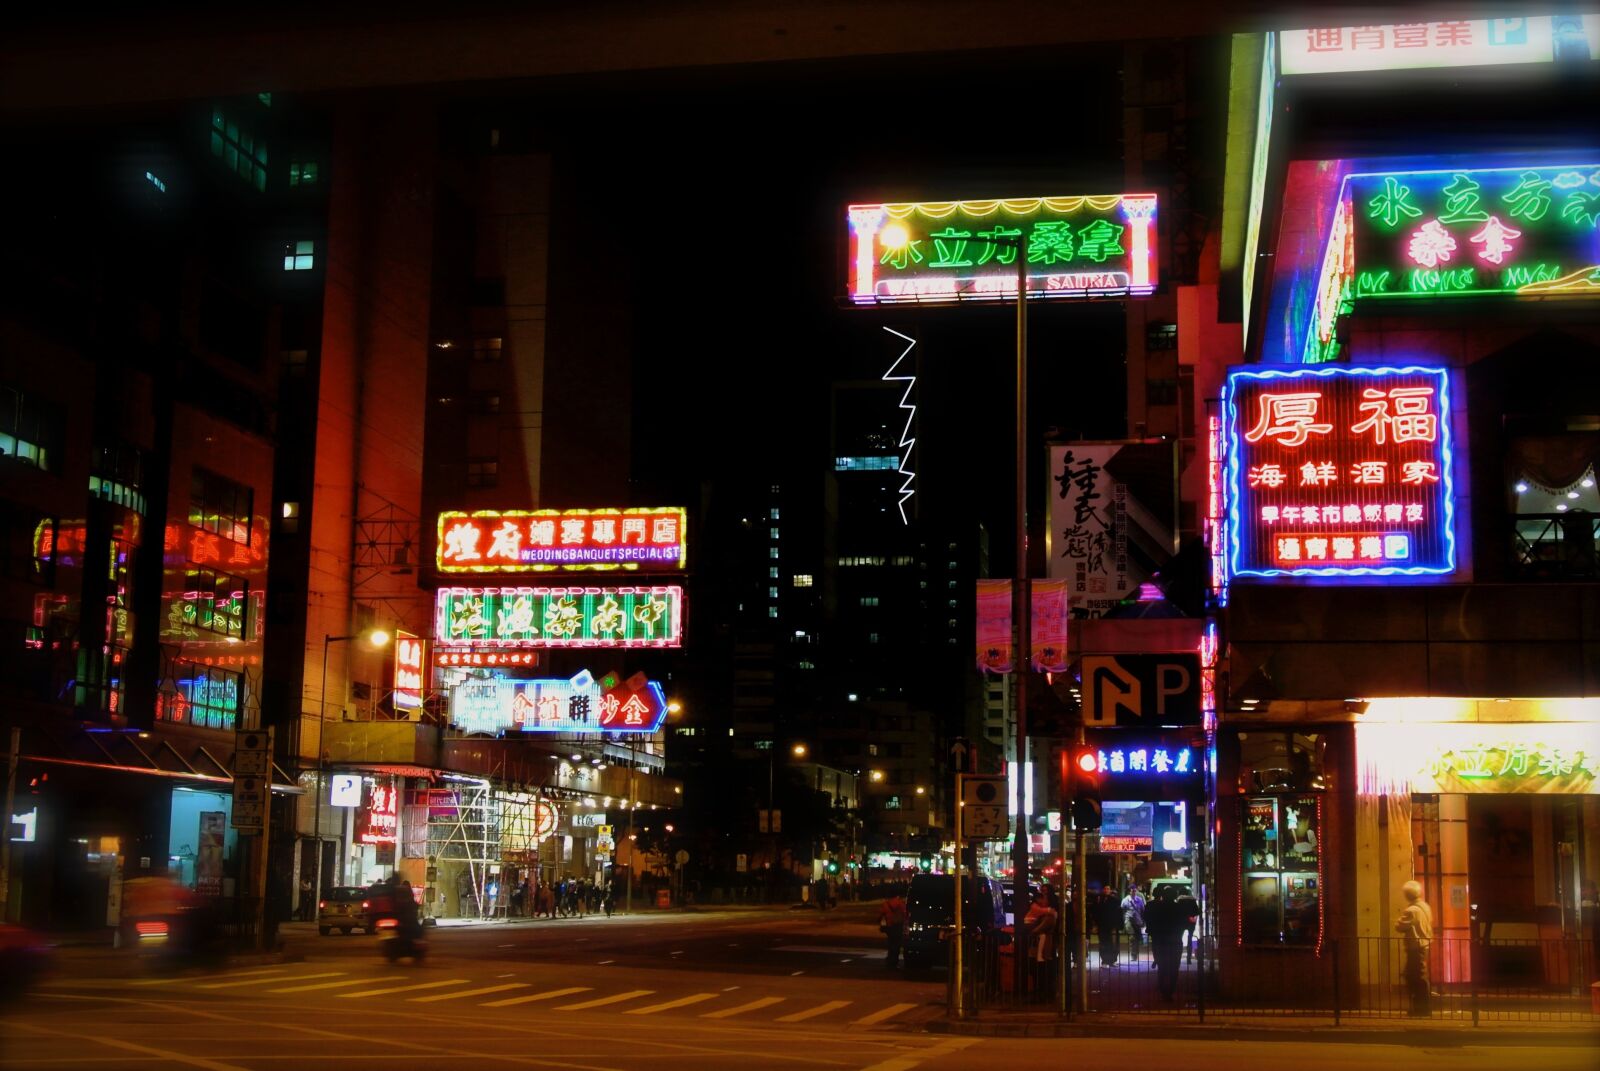 Nikon 1 V1 sample photo. Hong kong, neon, building photography